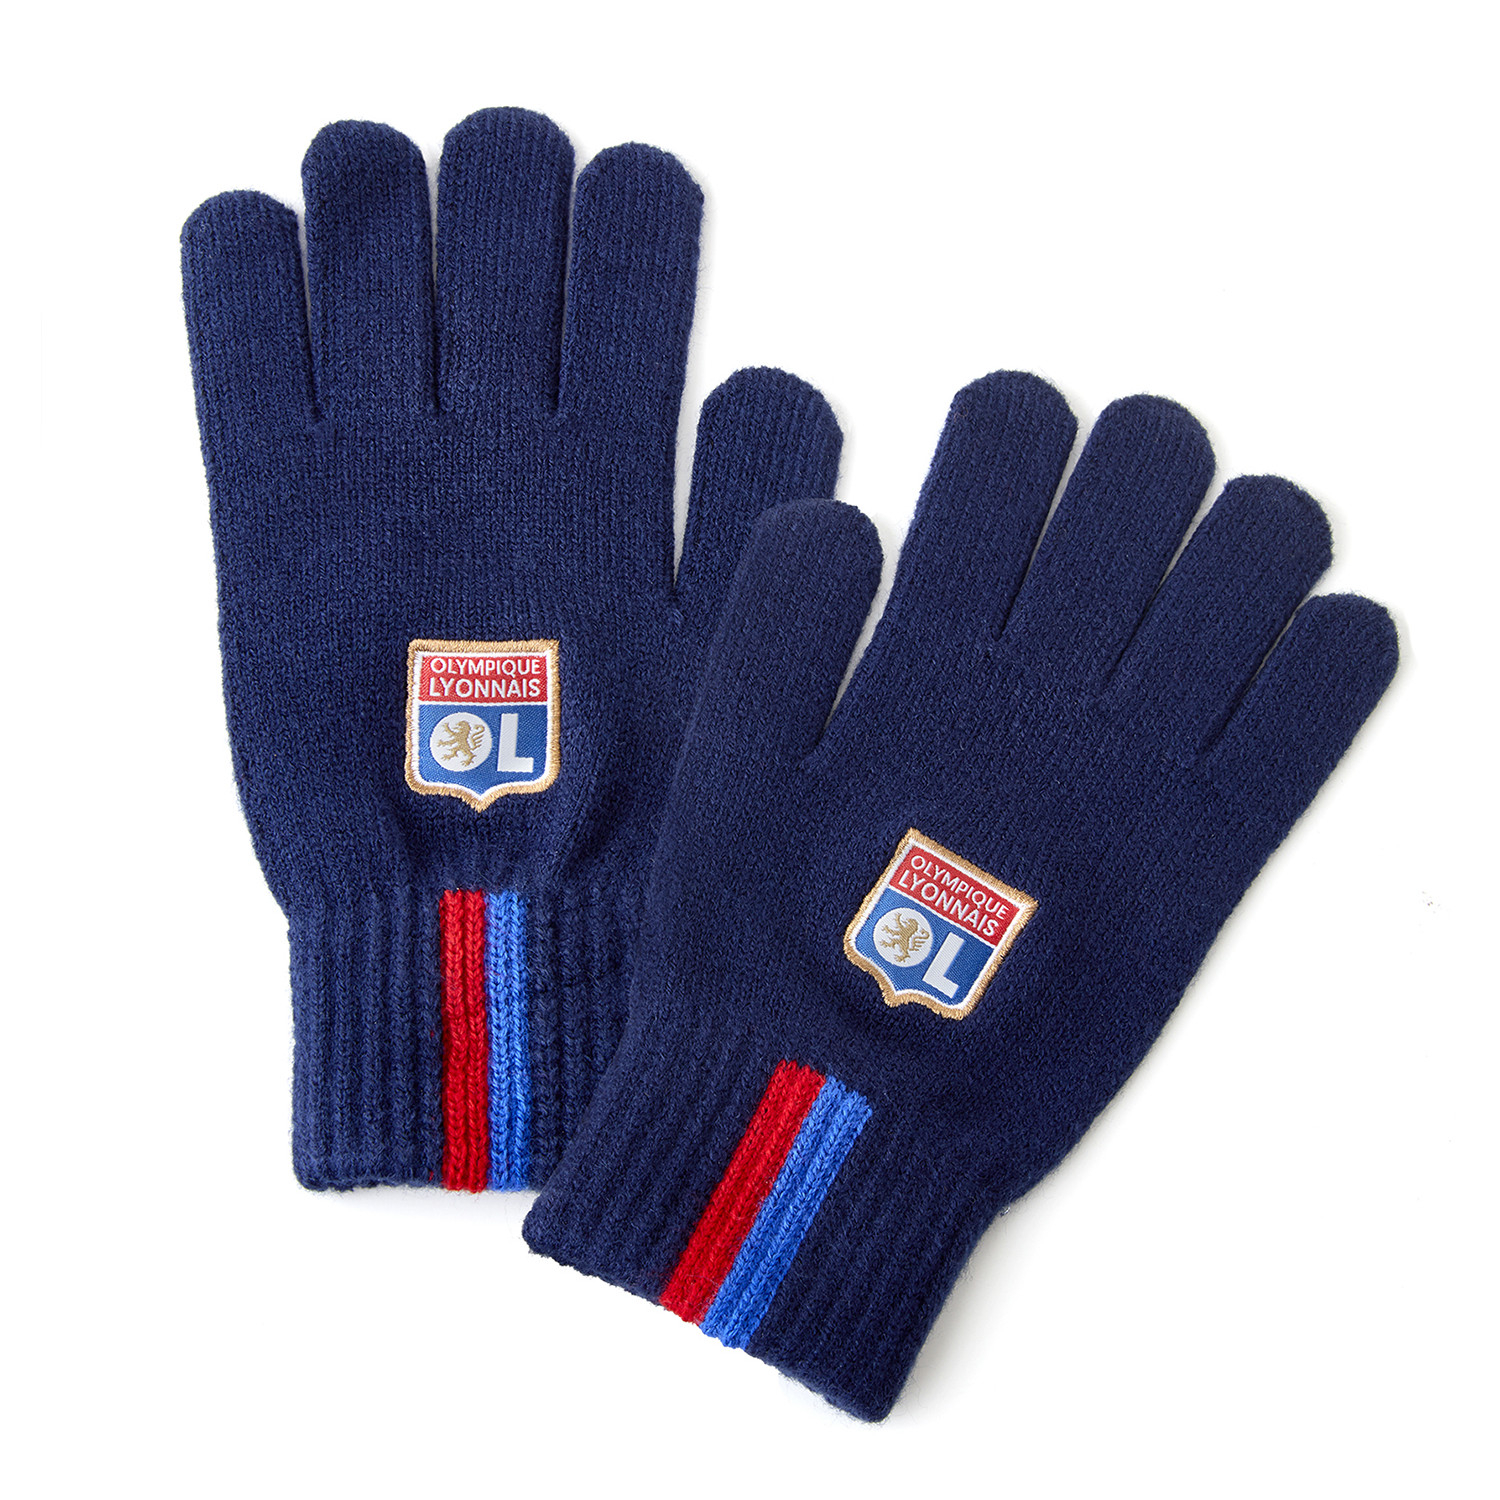 Gants homme Olympique Lyonnais : Gants de gardien, mitaines et gants  d'entraînement - Boutique officielle Olympique Lyonnais